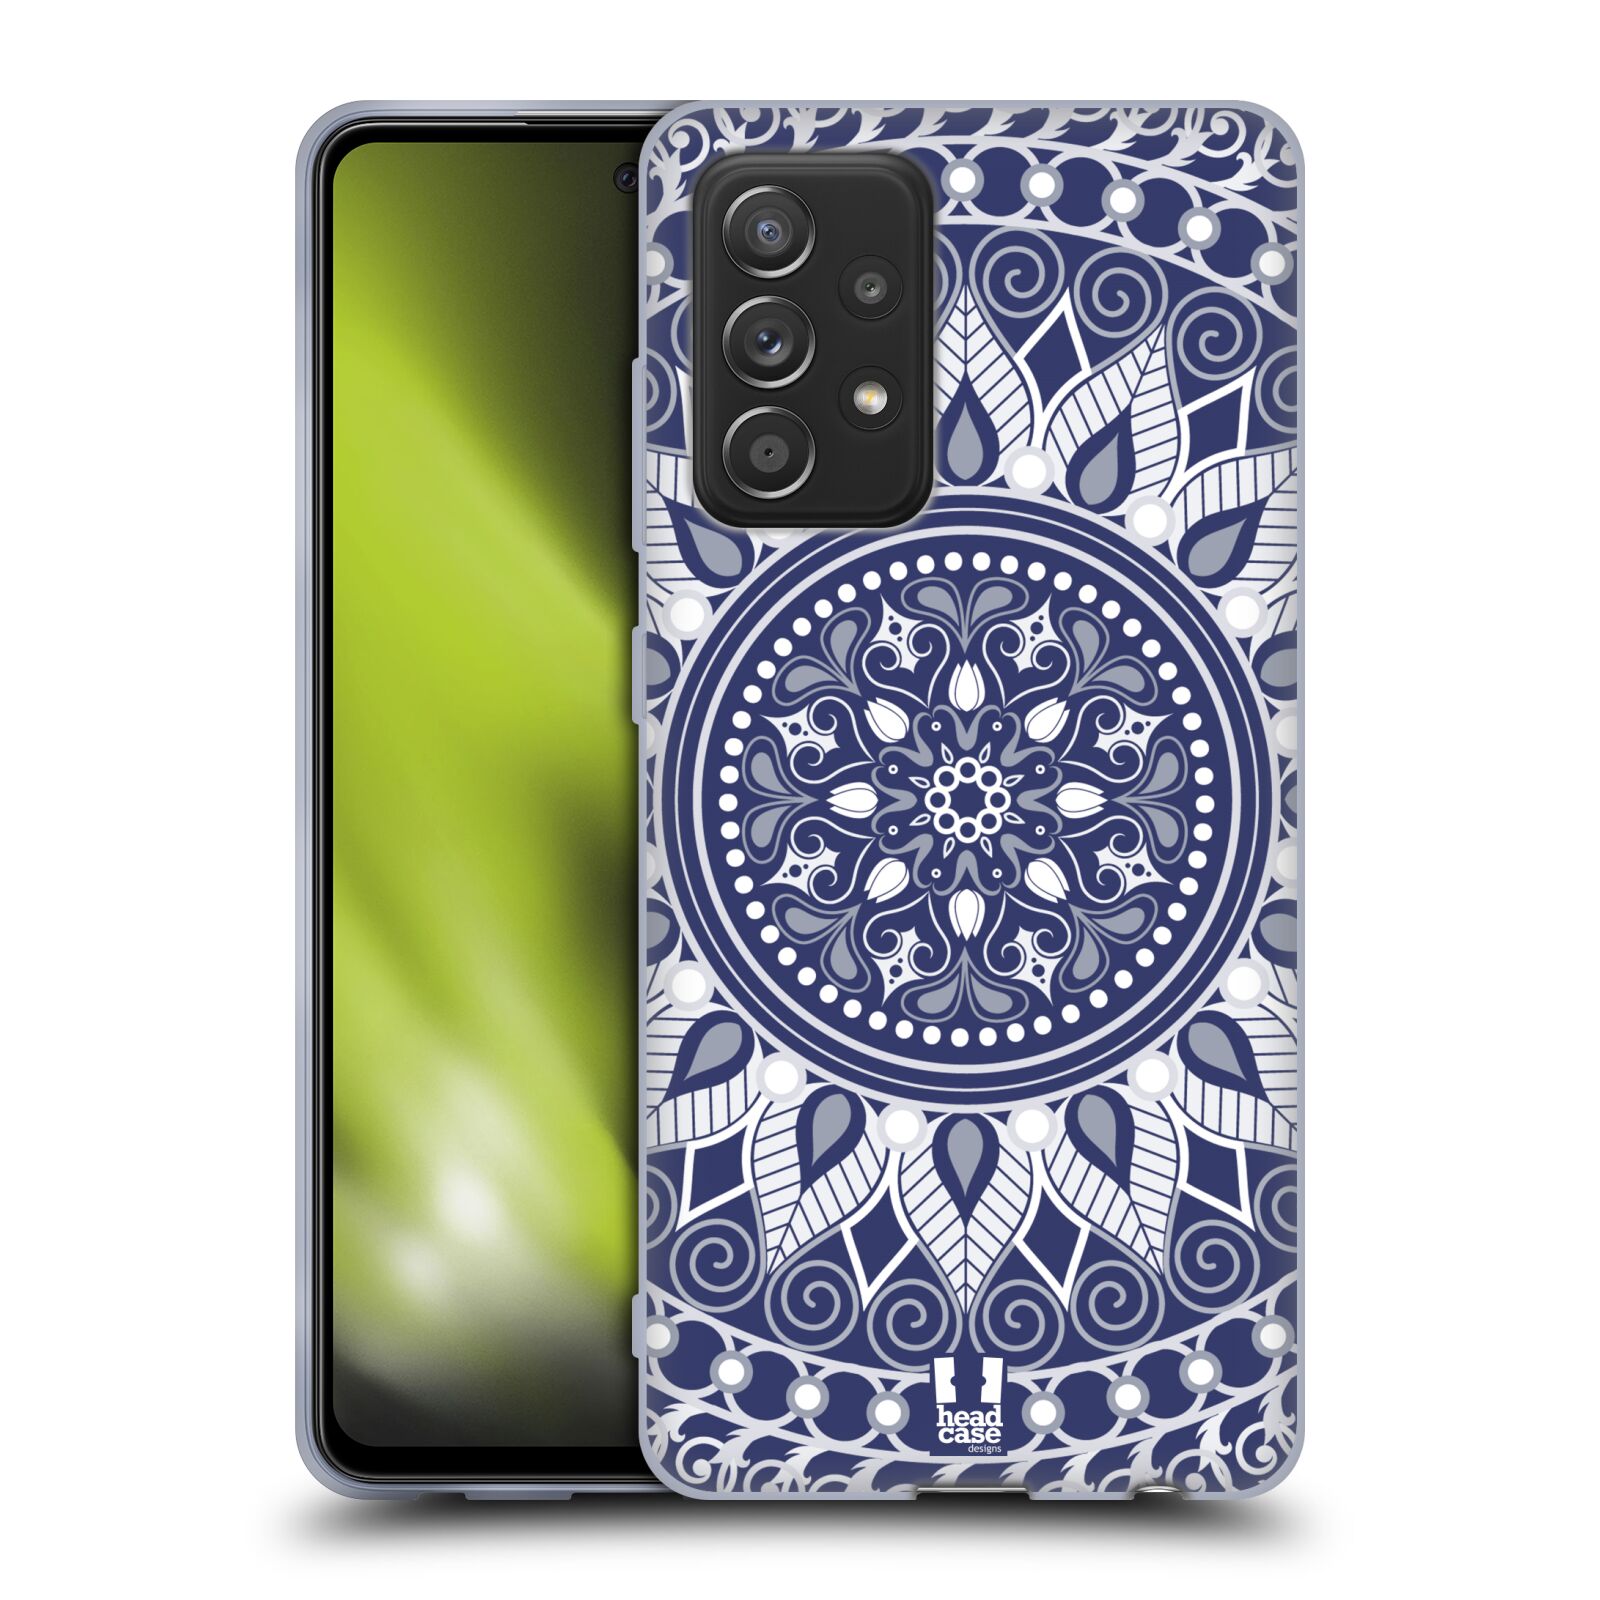 Plastový obal HEAD CASE na mobil Samsung Galaxy A52 / A52 5G / A52s 5G vzor Indie Mandala slunce barevný motiv MODRÁ